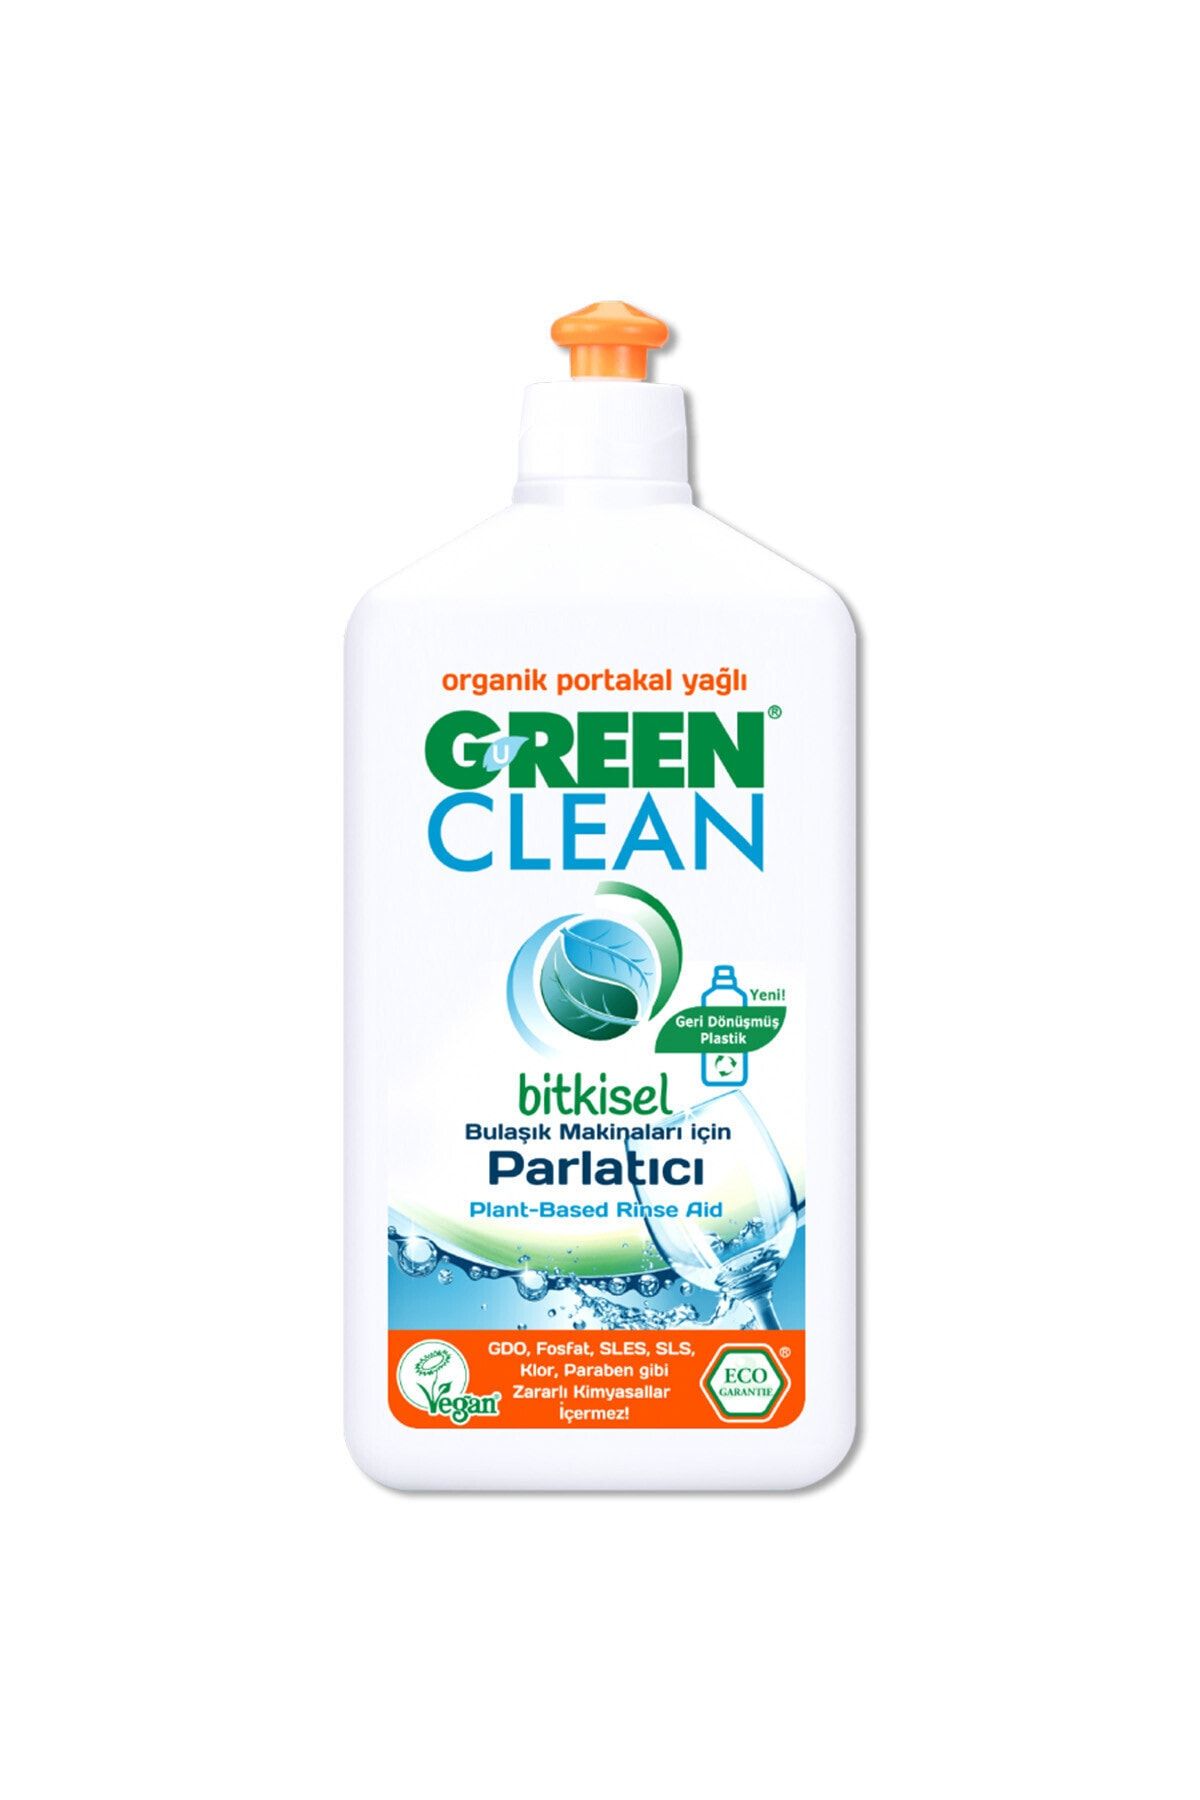 Green Clean Organik Portakal Yağlı Bitkisel Bulaşık Makinesi Parlatıcı 500 ml